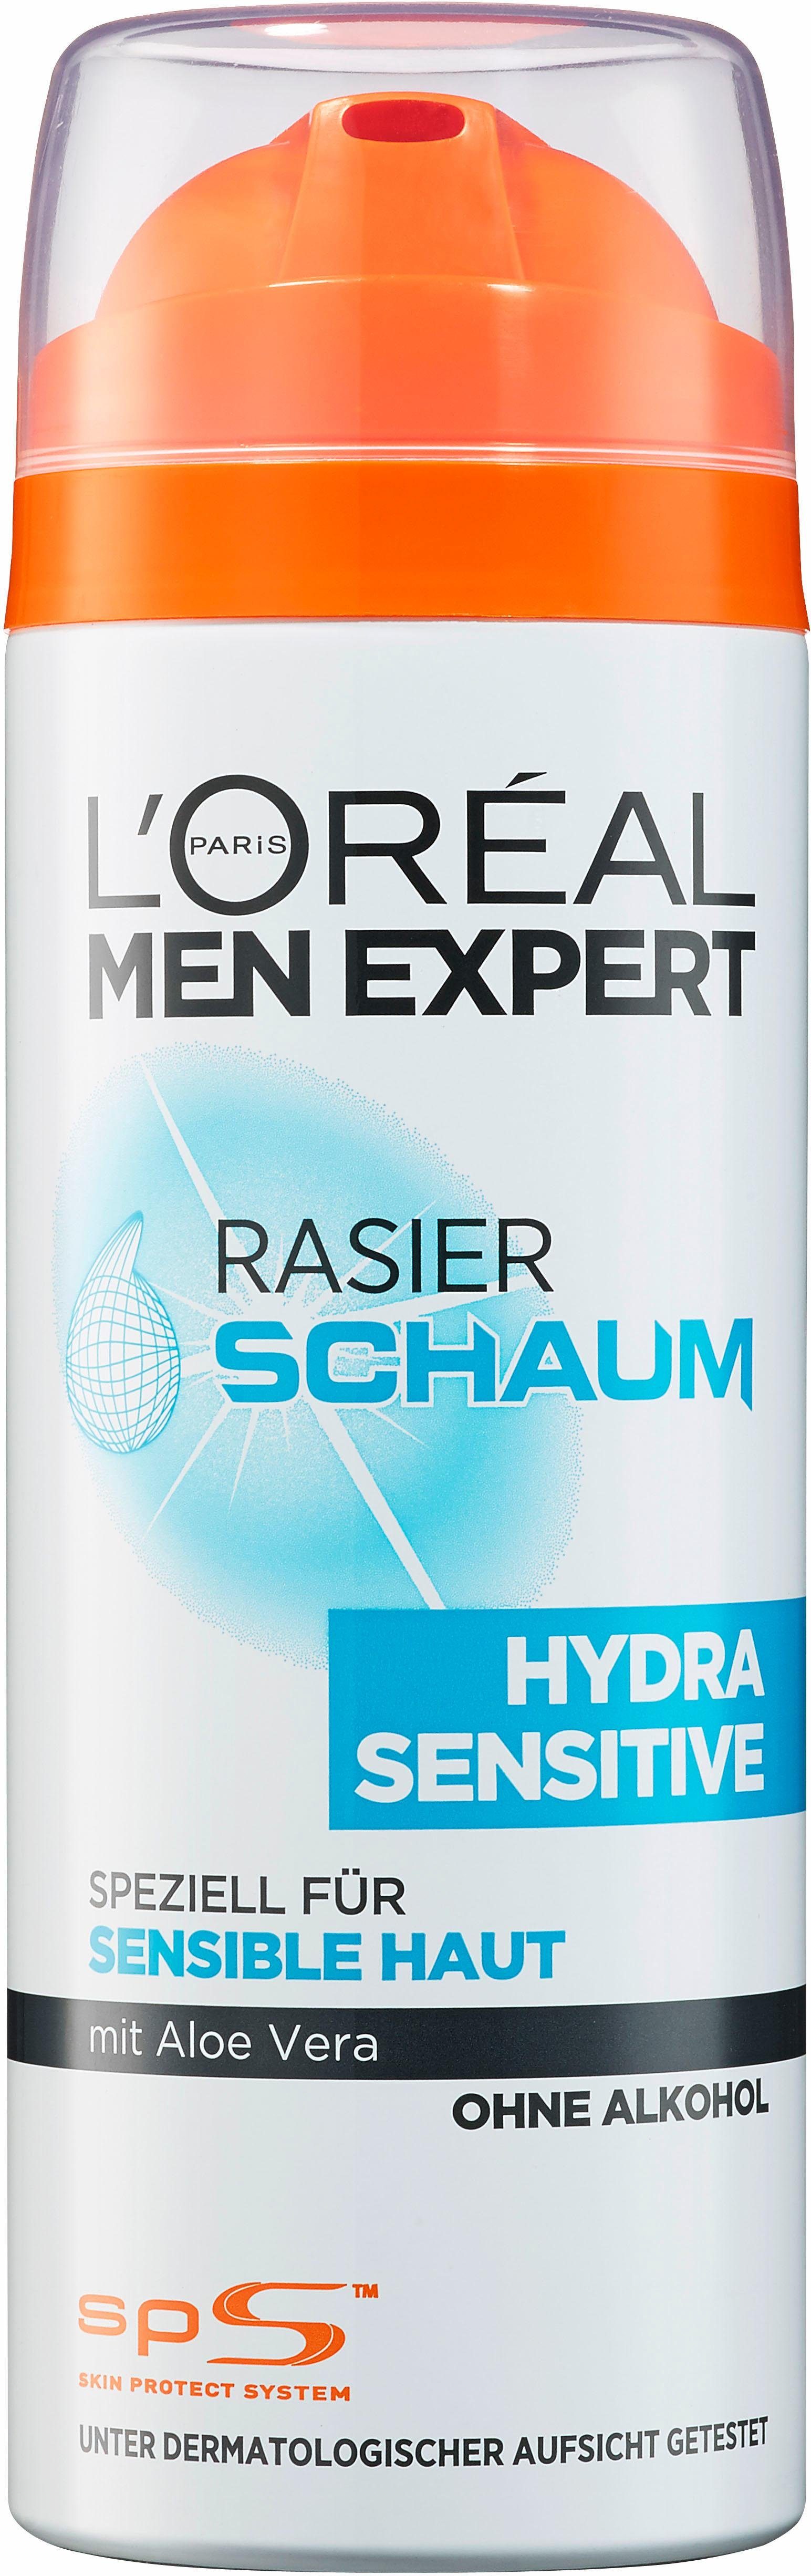 L'ORÉAL PARIS MEN EXPERT Rasierschaum »Hydra Sensitive«, pflegt sensible  Haut während & nach der Rasur